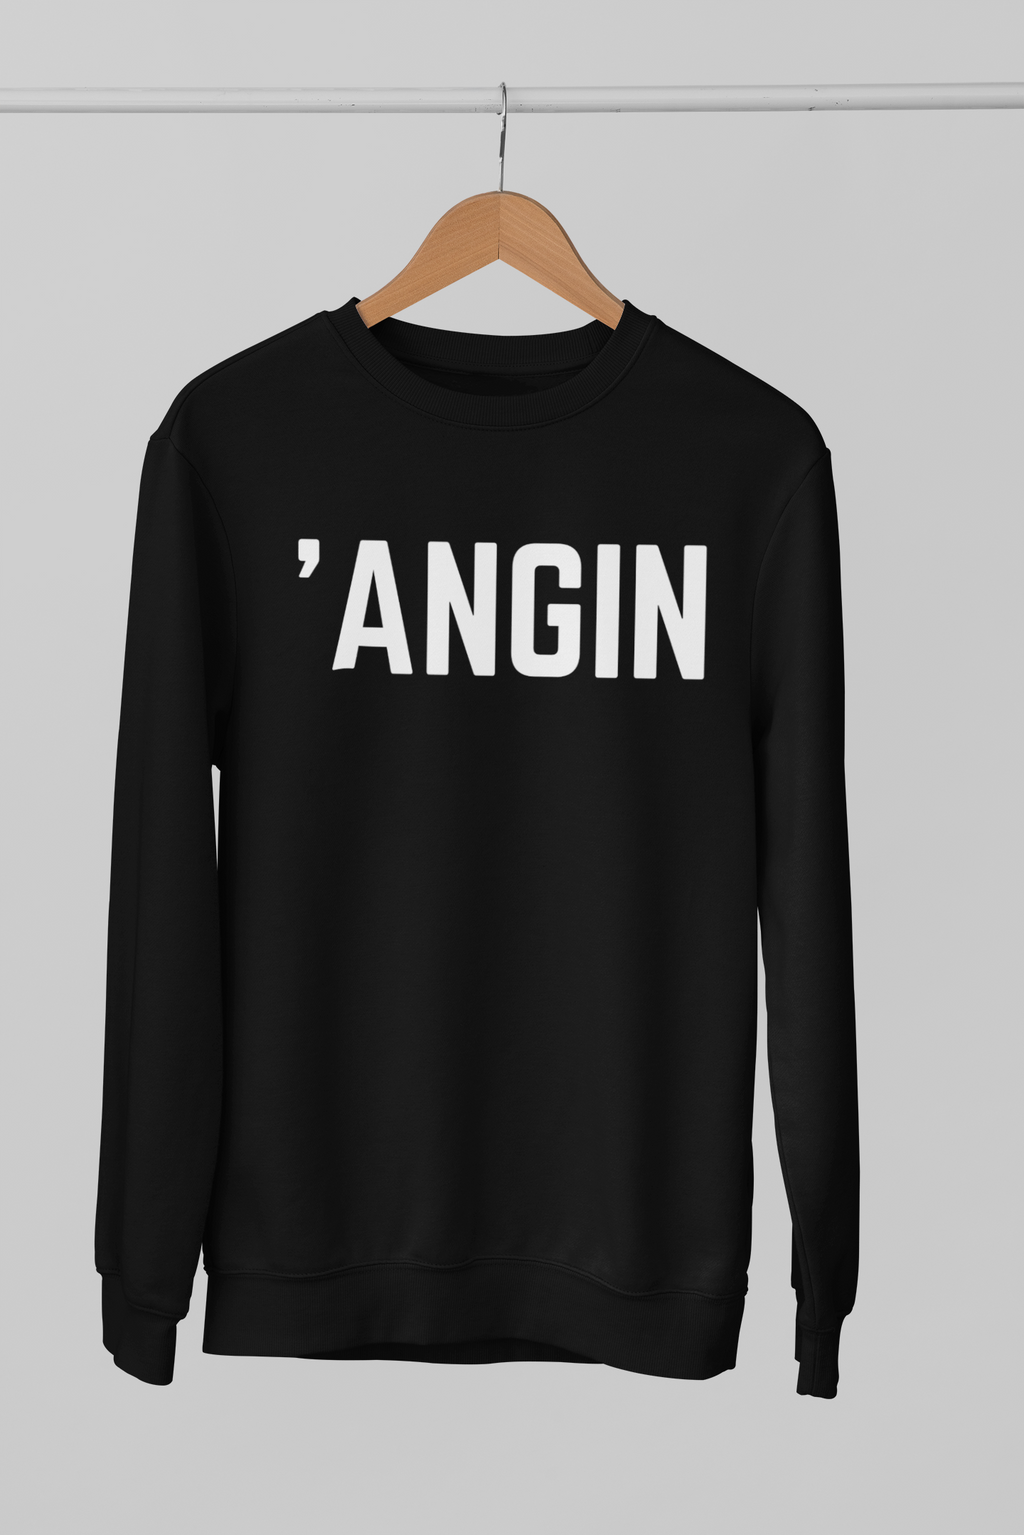 'ANGIN Northern Slang Sweatshirt Unisex